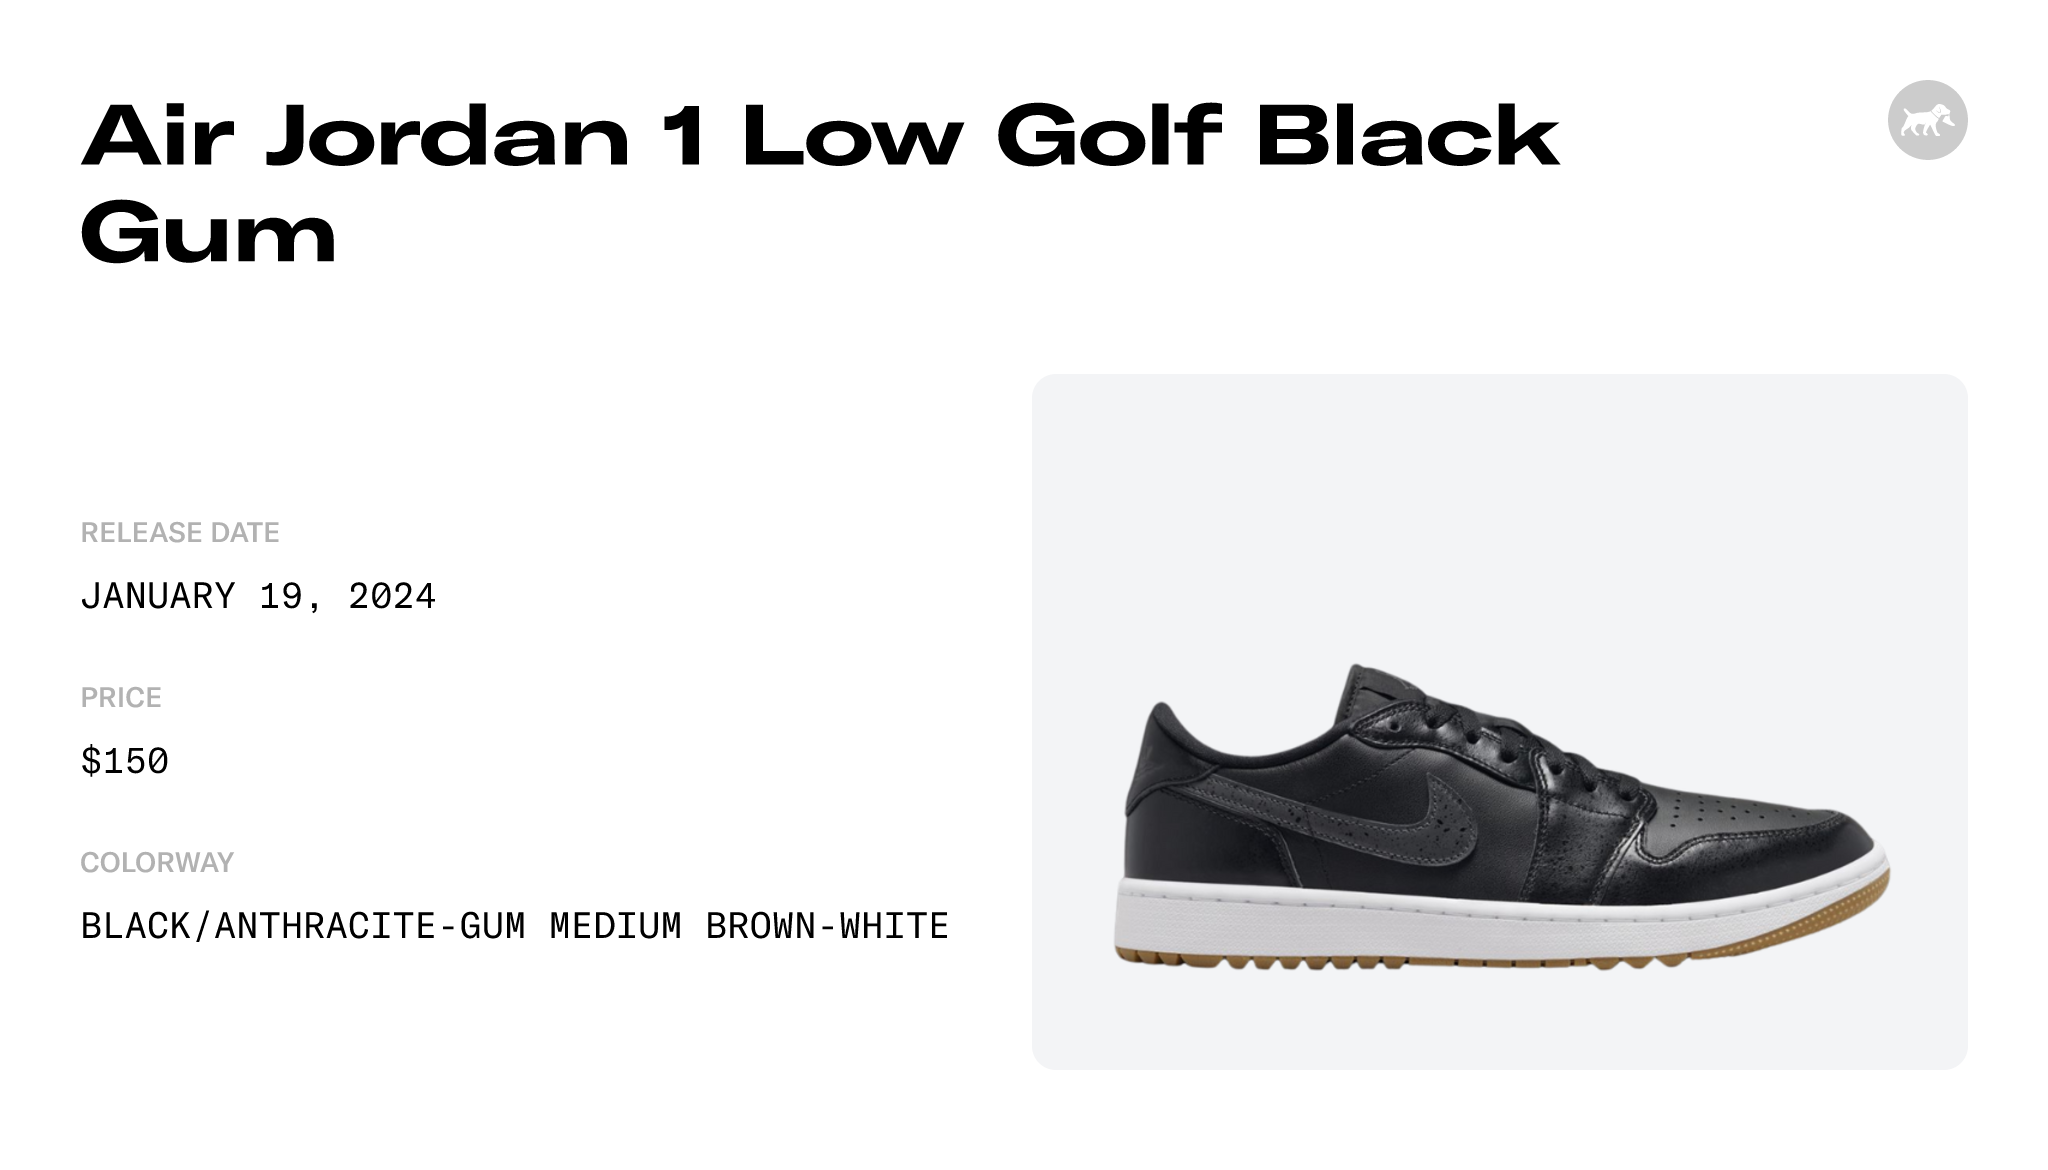 Air Jordan 1 Low Golf Black Gum - DD9315-005 Raffles and Release Date